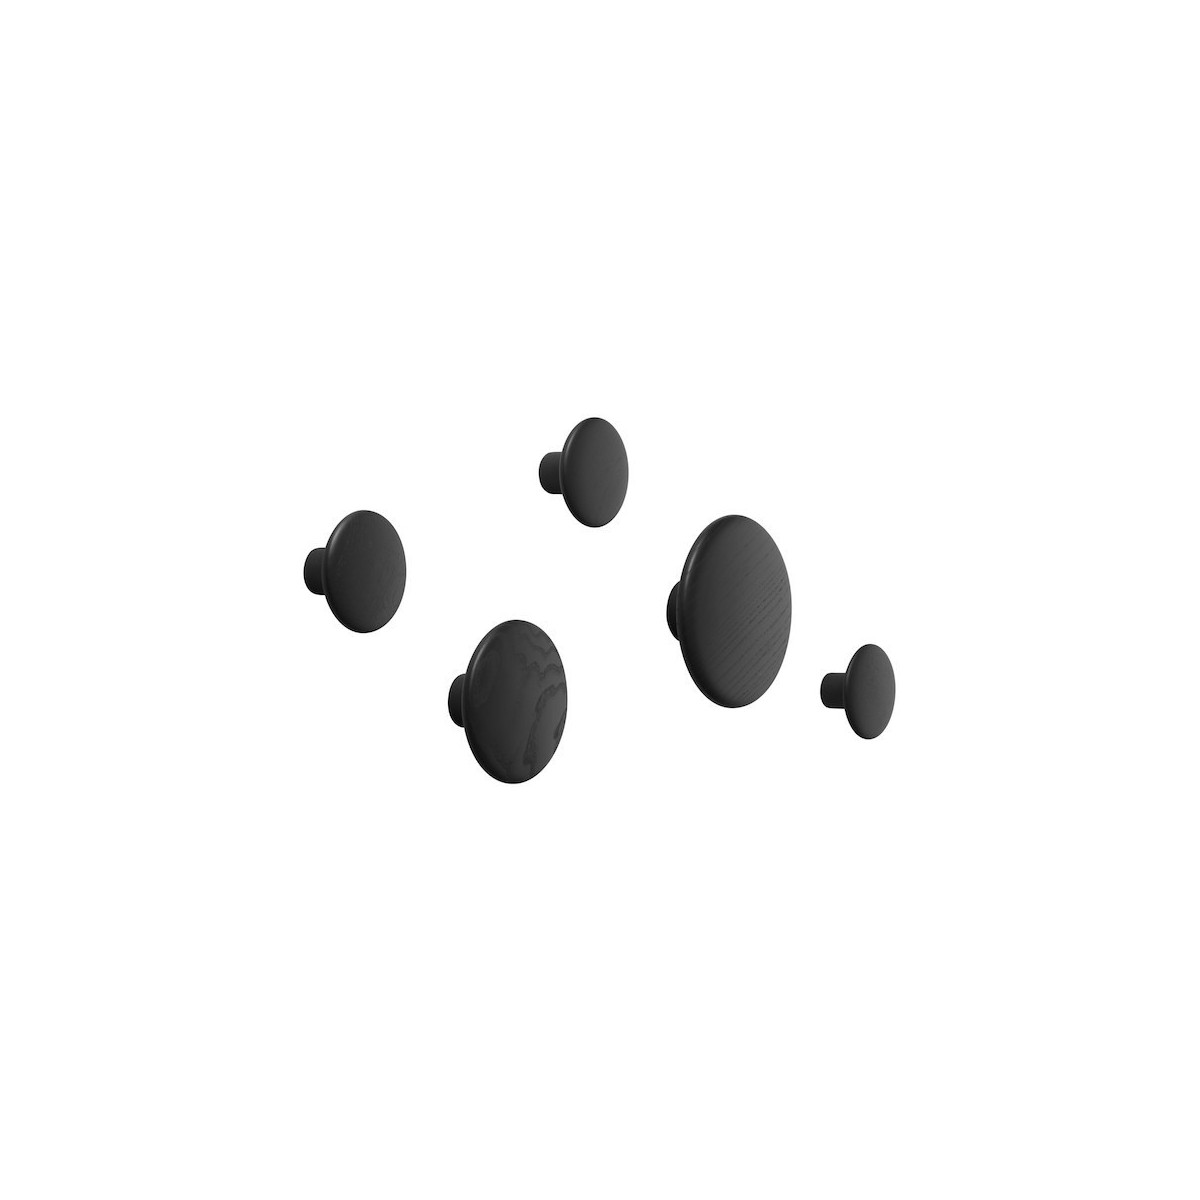 noir - 5 x The Dots